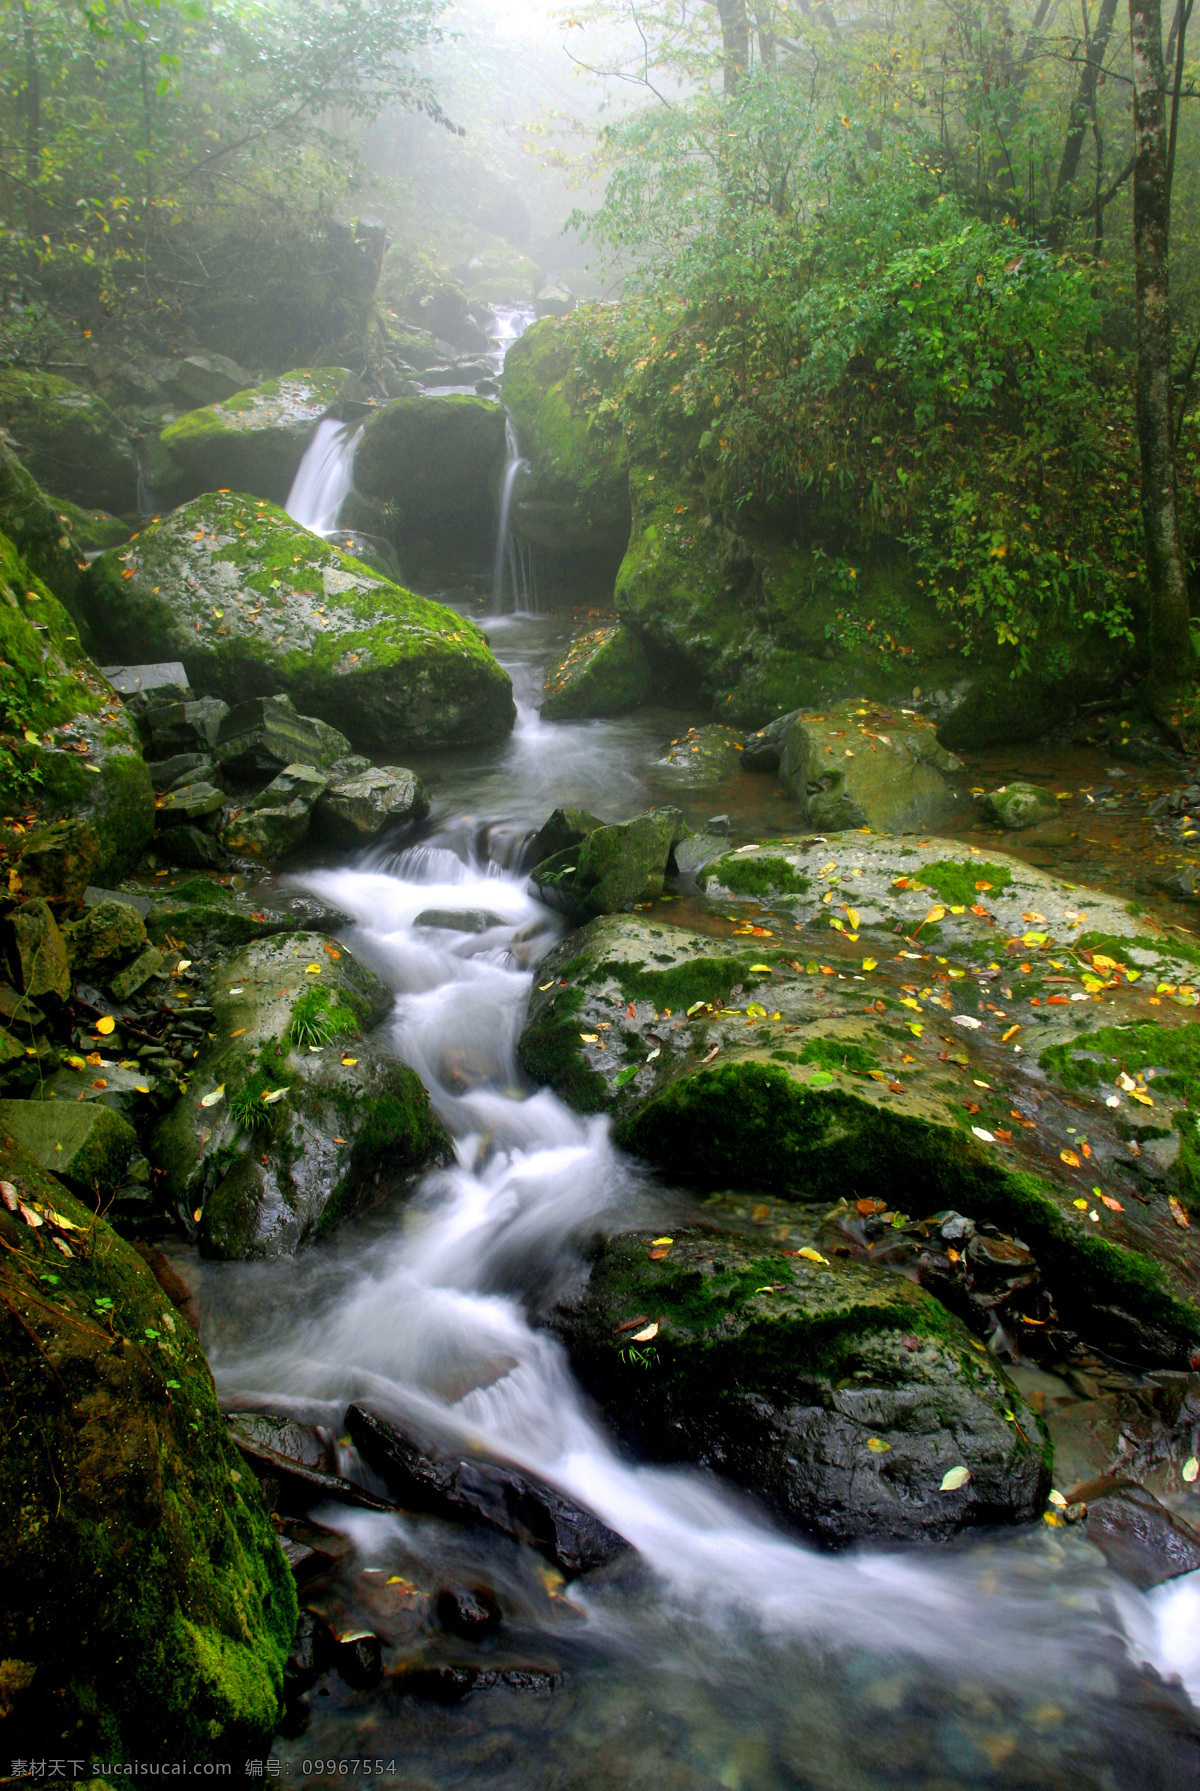 千层河 溪流 流水 山中溪水 瀑布 绿色苔藓 绿色 树木 森林 意境 旅游摄影 国内旅游